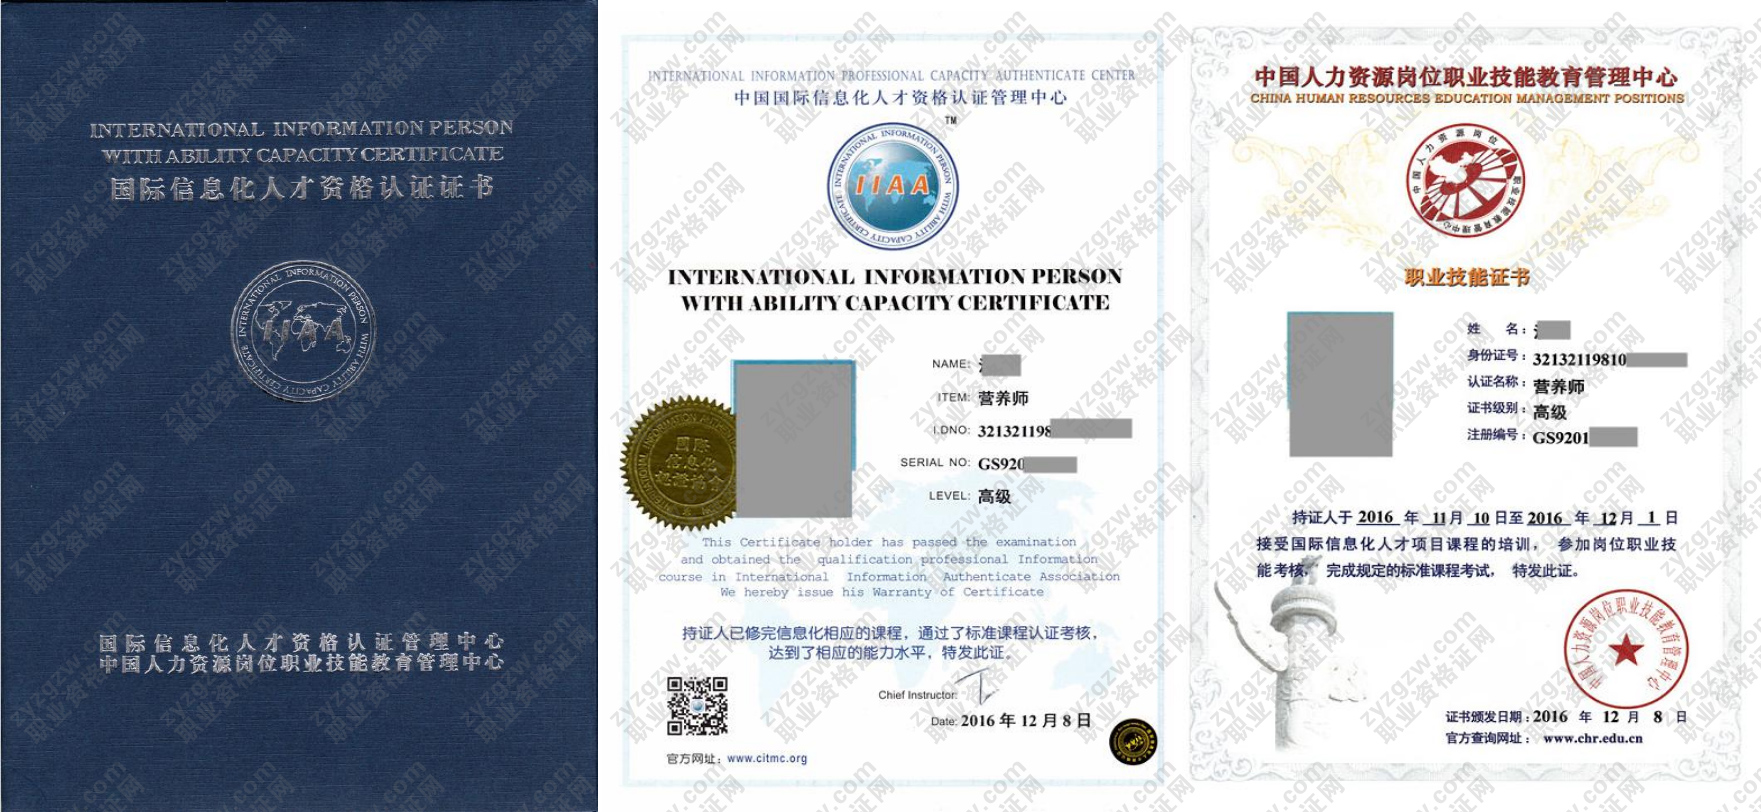 中国人力资源岗位职业技能教育管理中心 育婴师 国际信息化人才资格认证证书